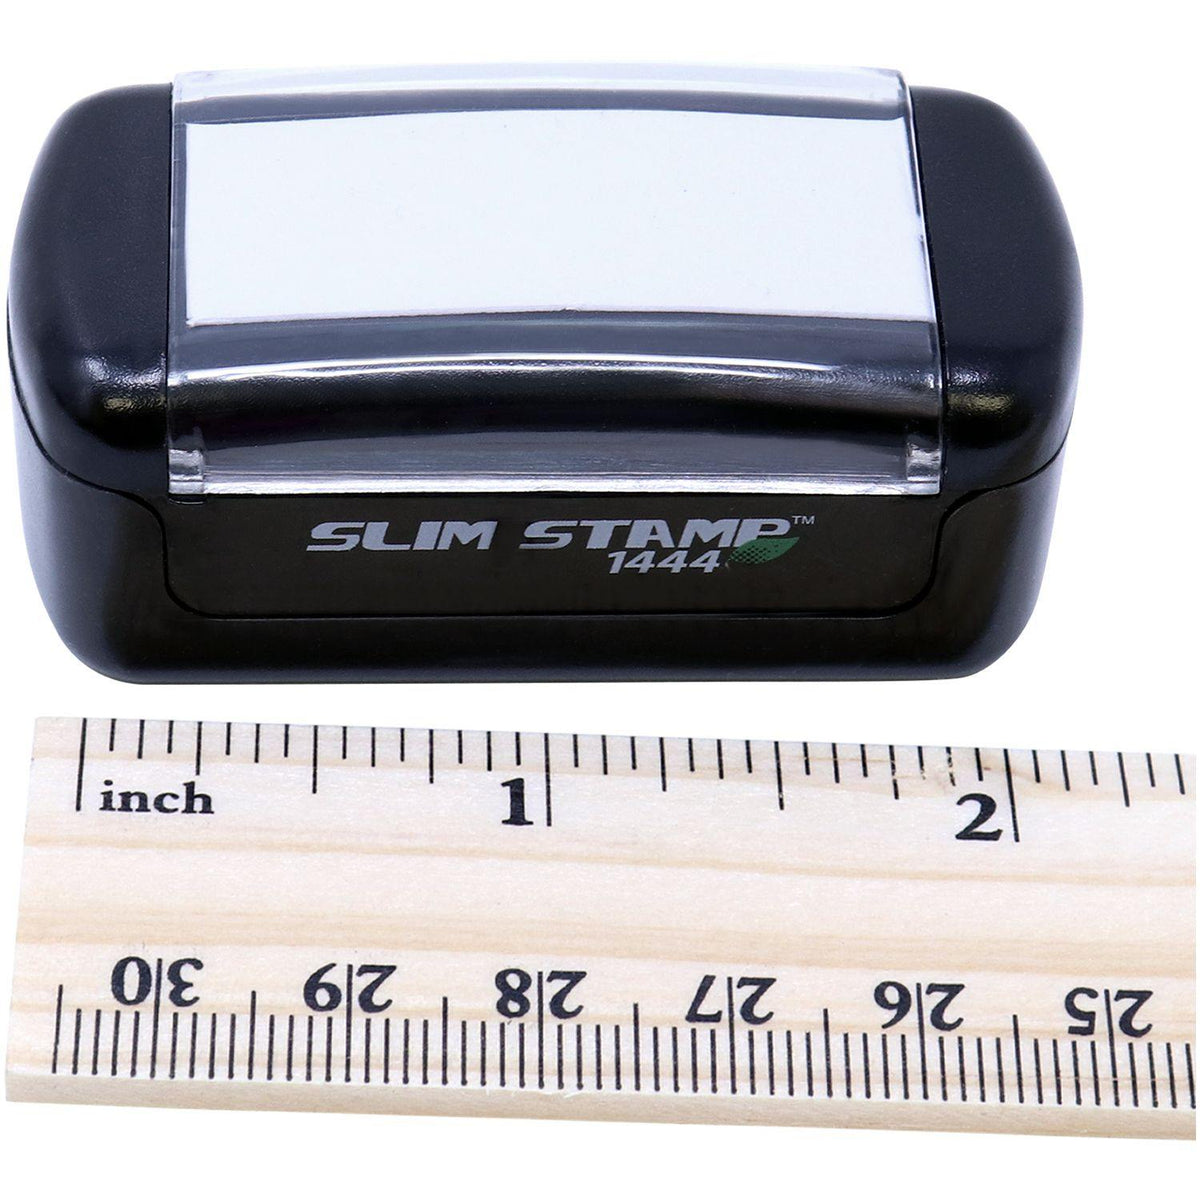 Measurement Slim Pre-Inked Por Avion Stamp with Ruler